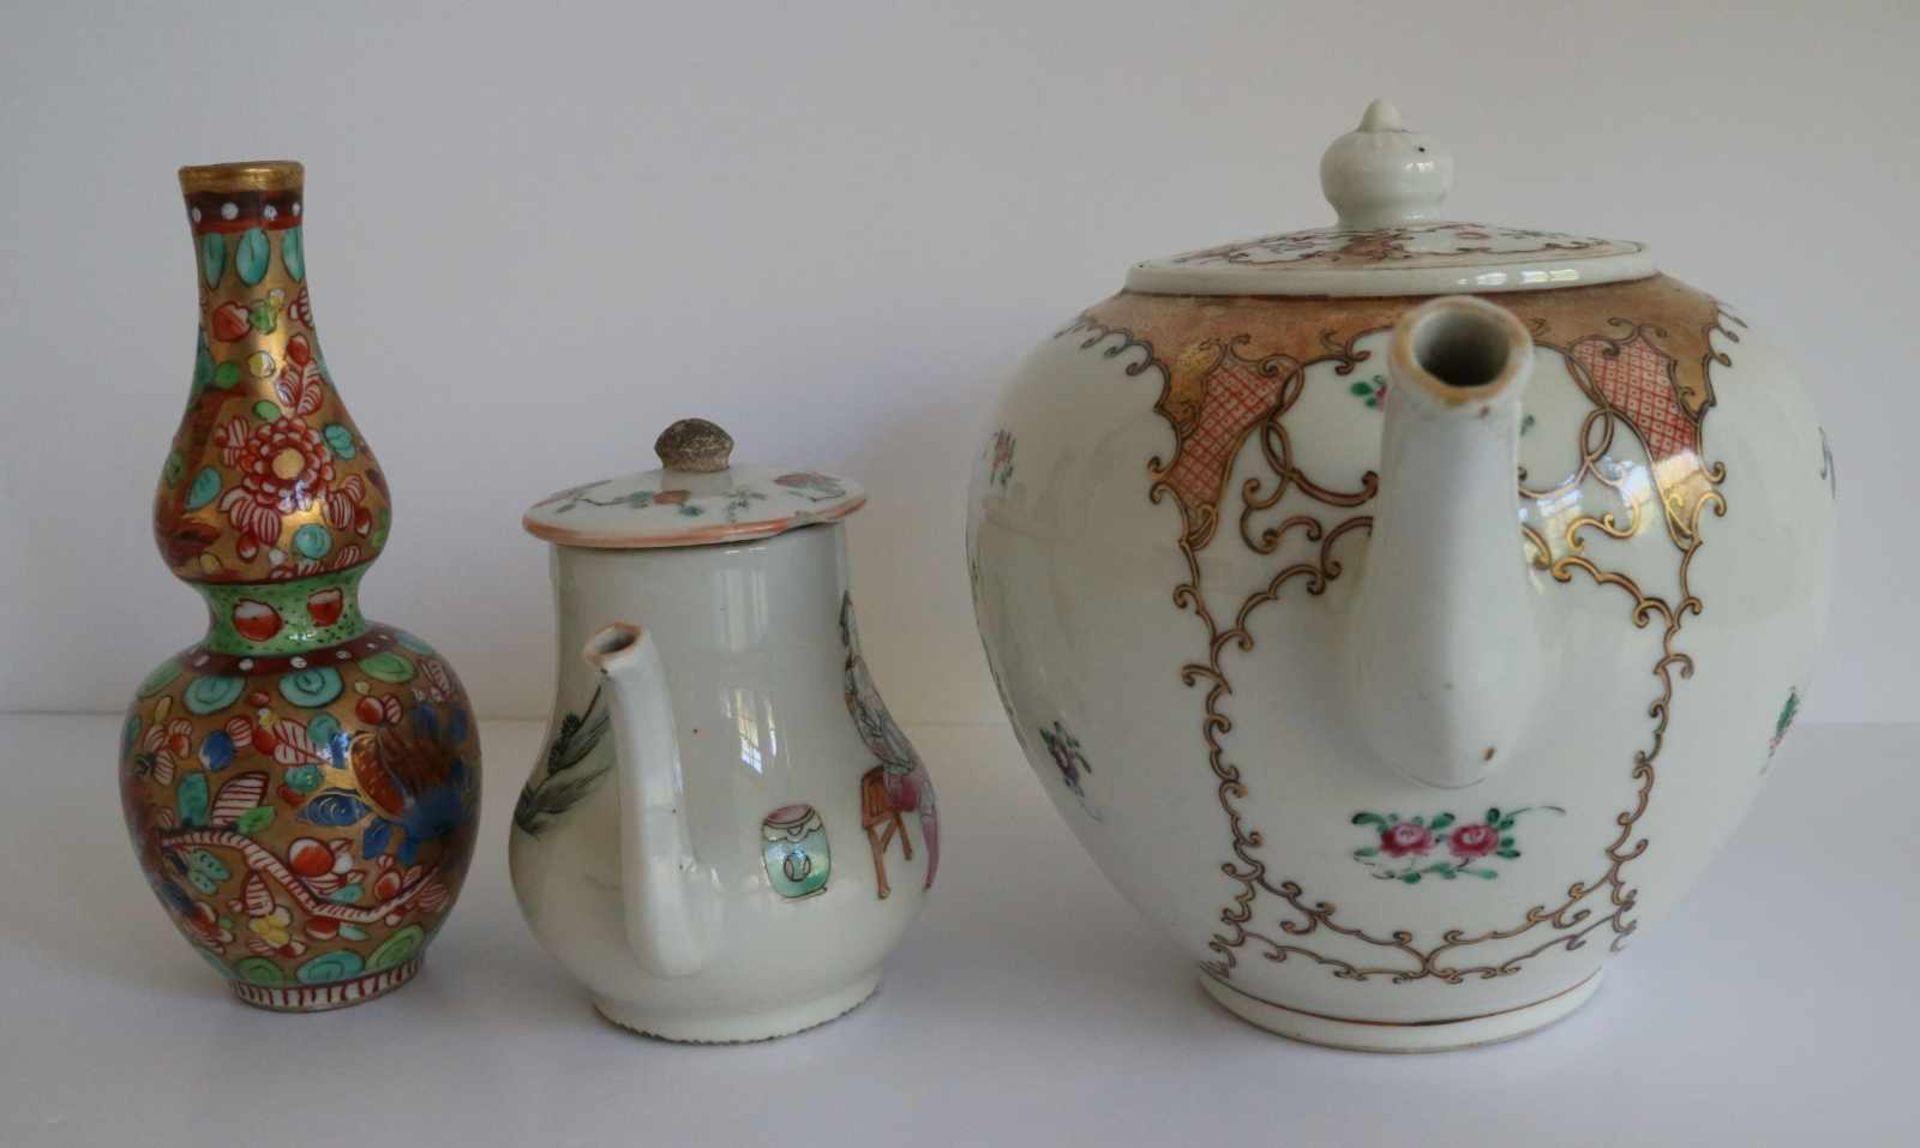 Porcelain Teapot Chine de commande, calebas vase Samson and teapot (crack) H 9,5 tot 13,5 cm - Bild 4 aus 6